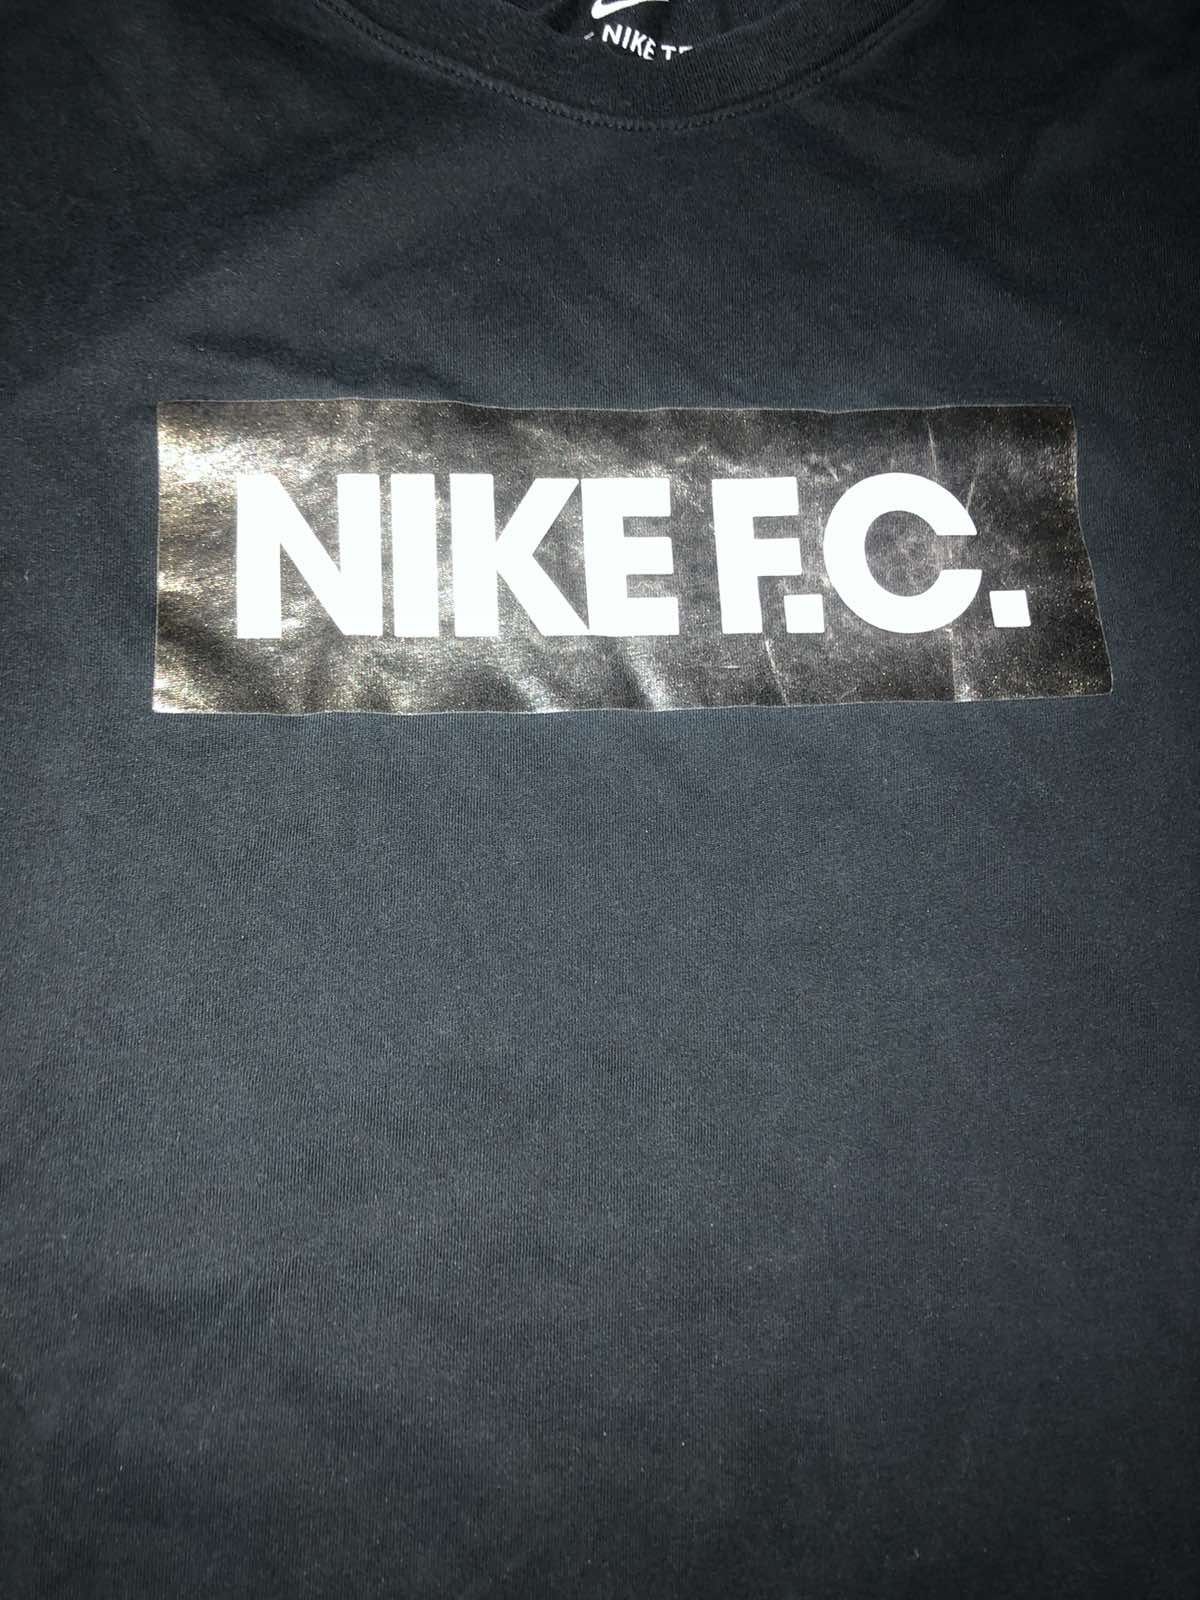 Футболка Nike.FC.